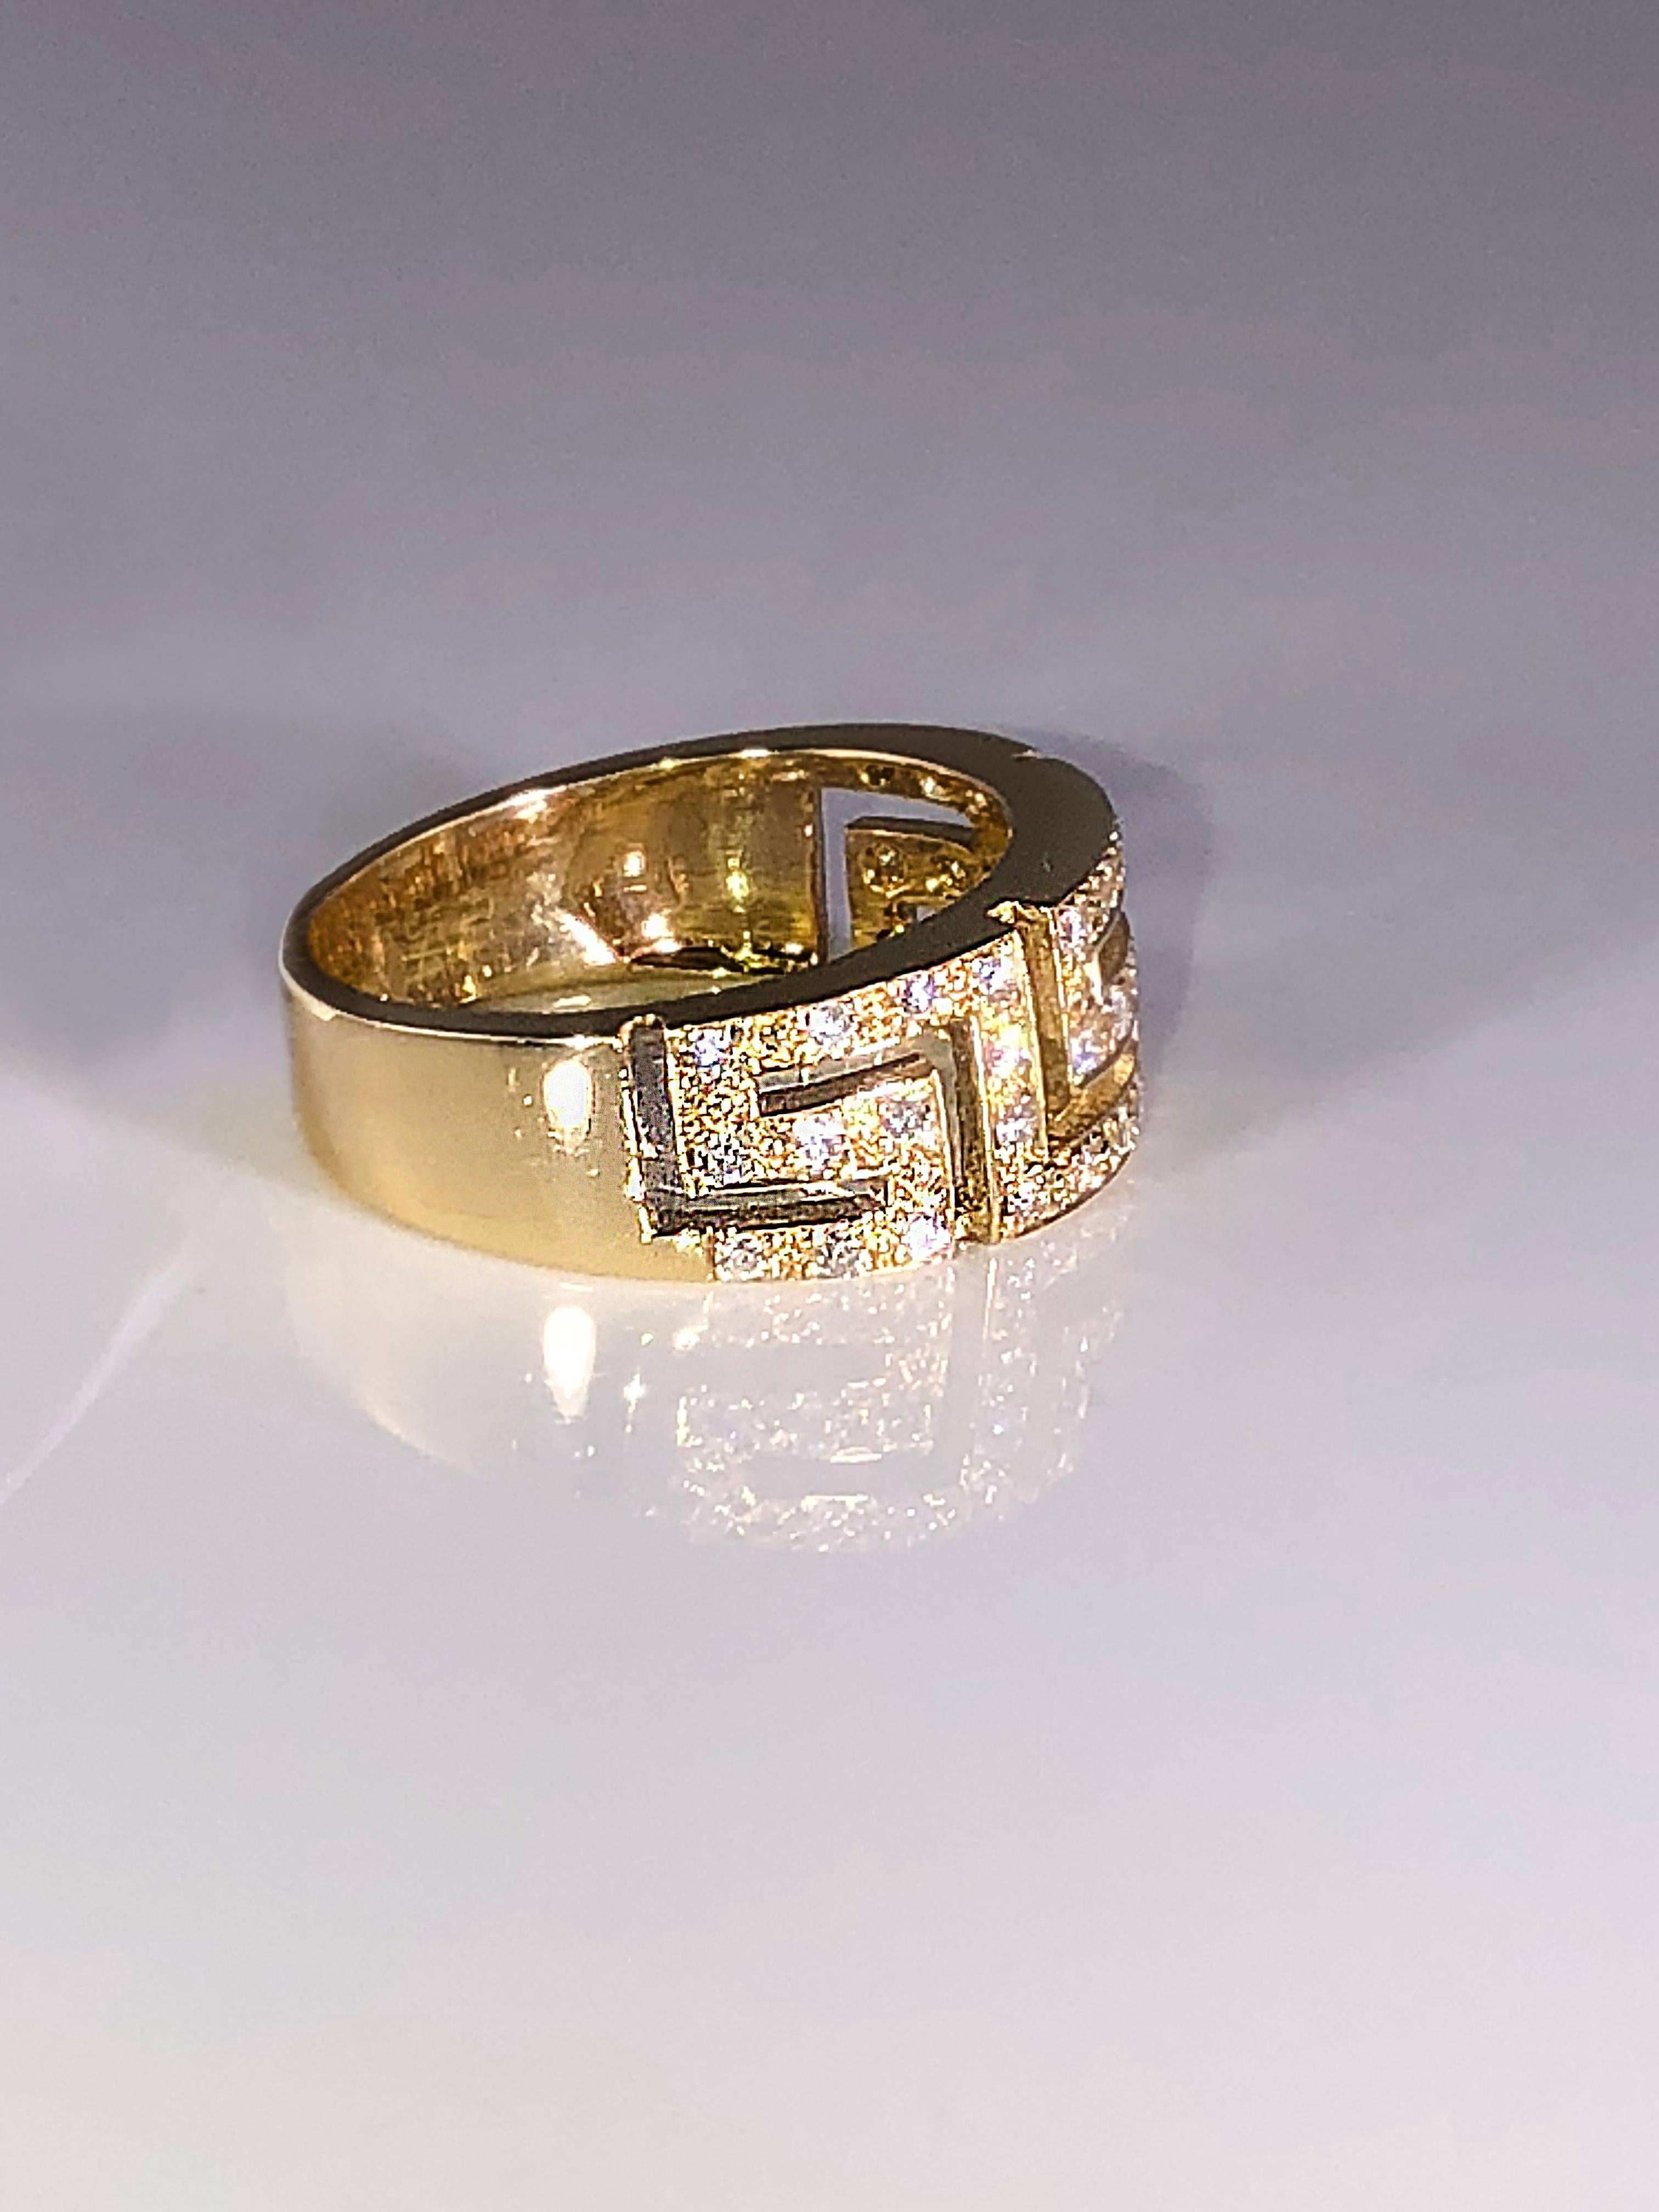 La bague en or jaune 18 carats avec diamant S.Georgios est fabriquée à la main et présente le motif de la clé grecque qui symbolise l'éternité. Elle est ornée de diamants blancs taille brillant d'un poids total de 0,38 carat. Elle peut également